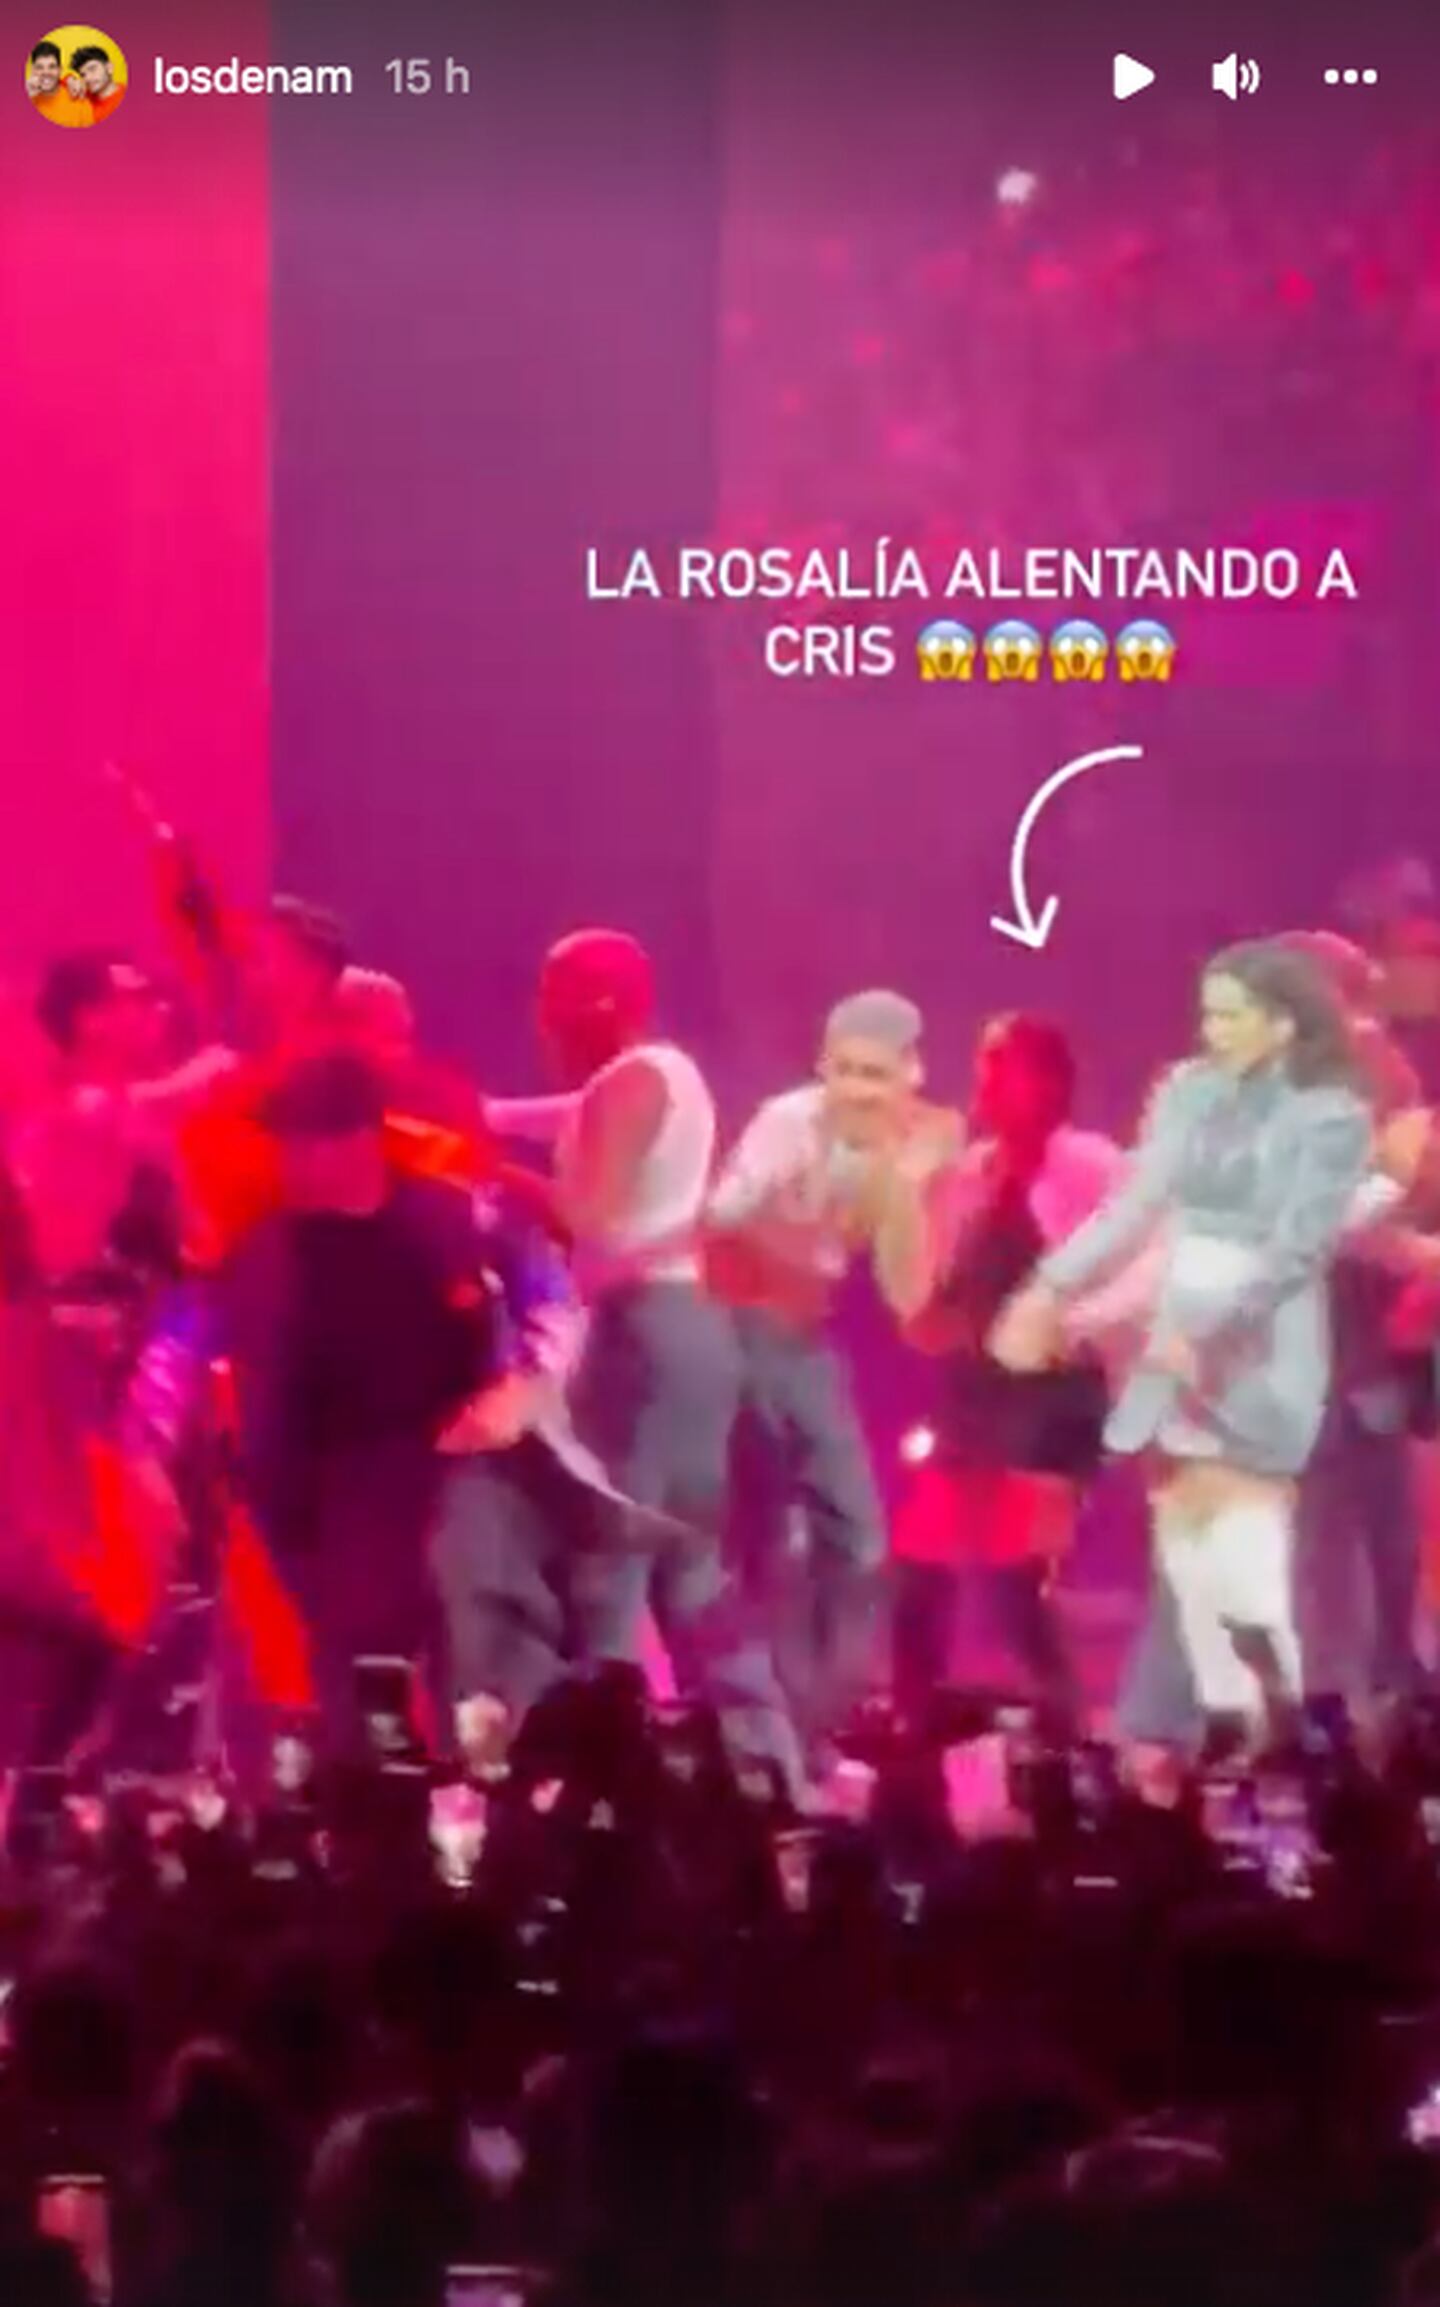 Criss balando en el concierto de rosalia. pantallazo tomado de Instagram @losñam